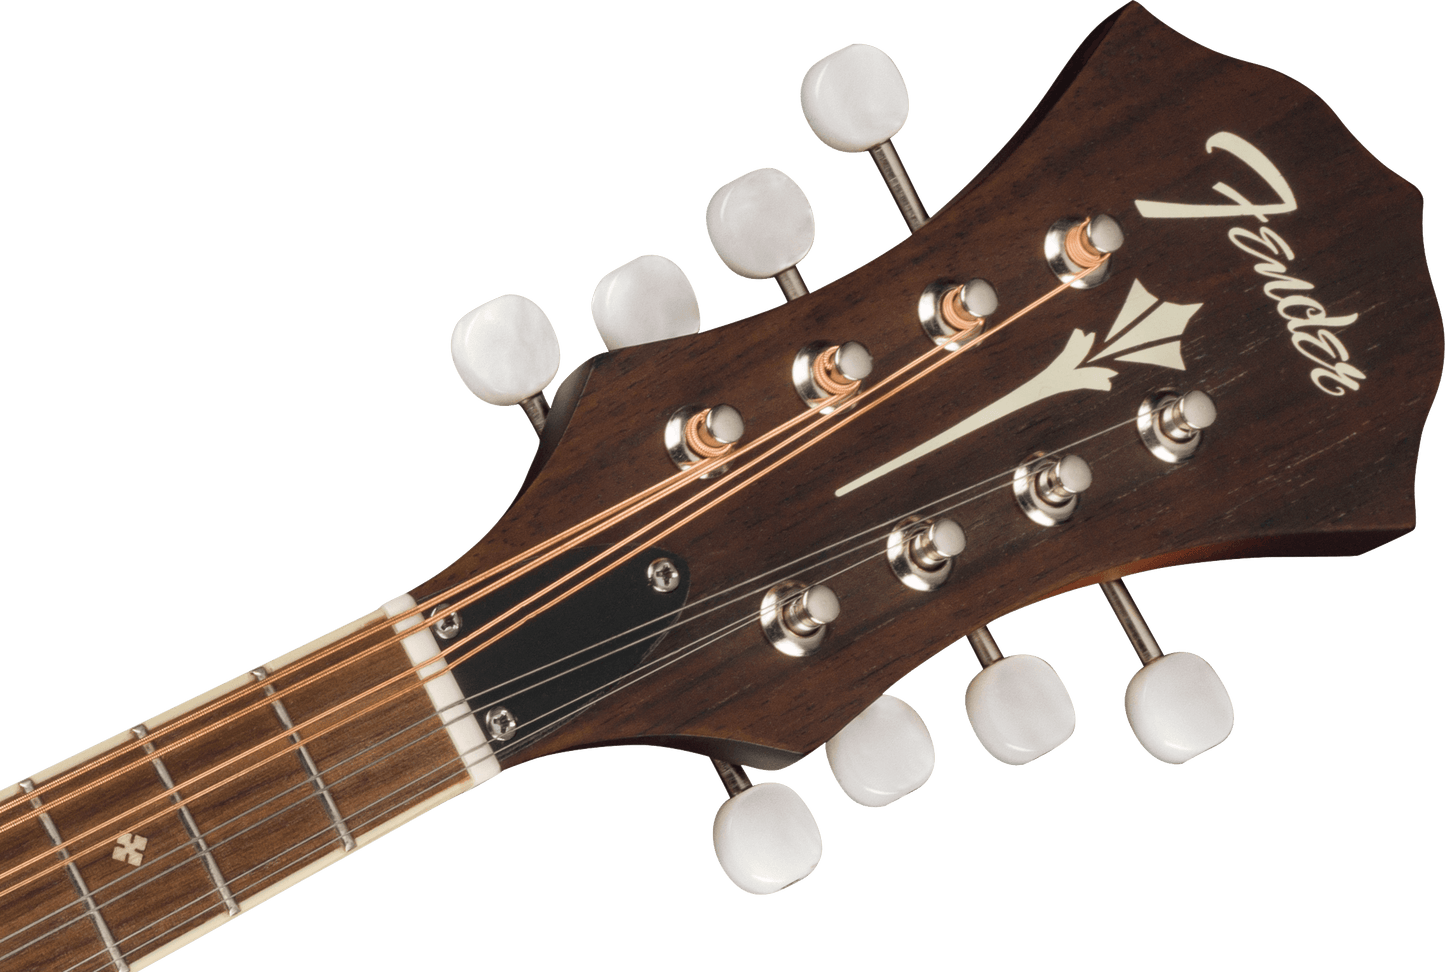 Fender PM-180E Electric Mandolin